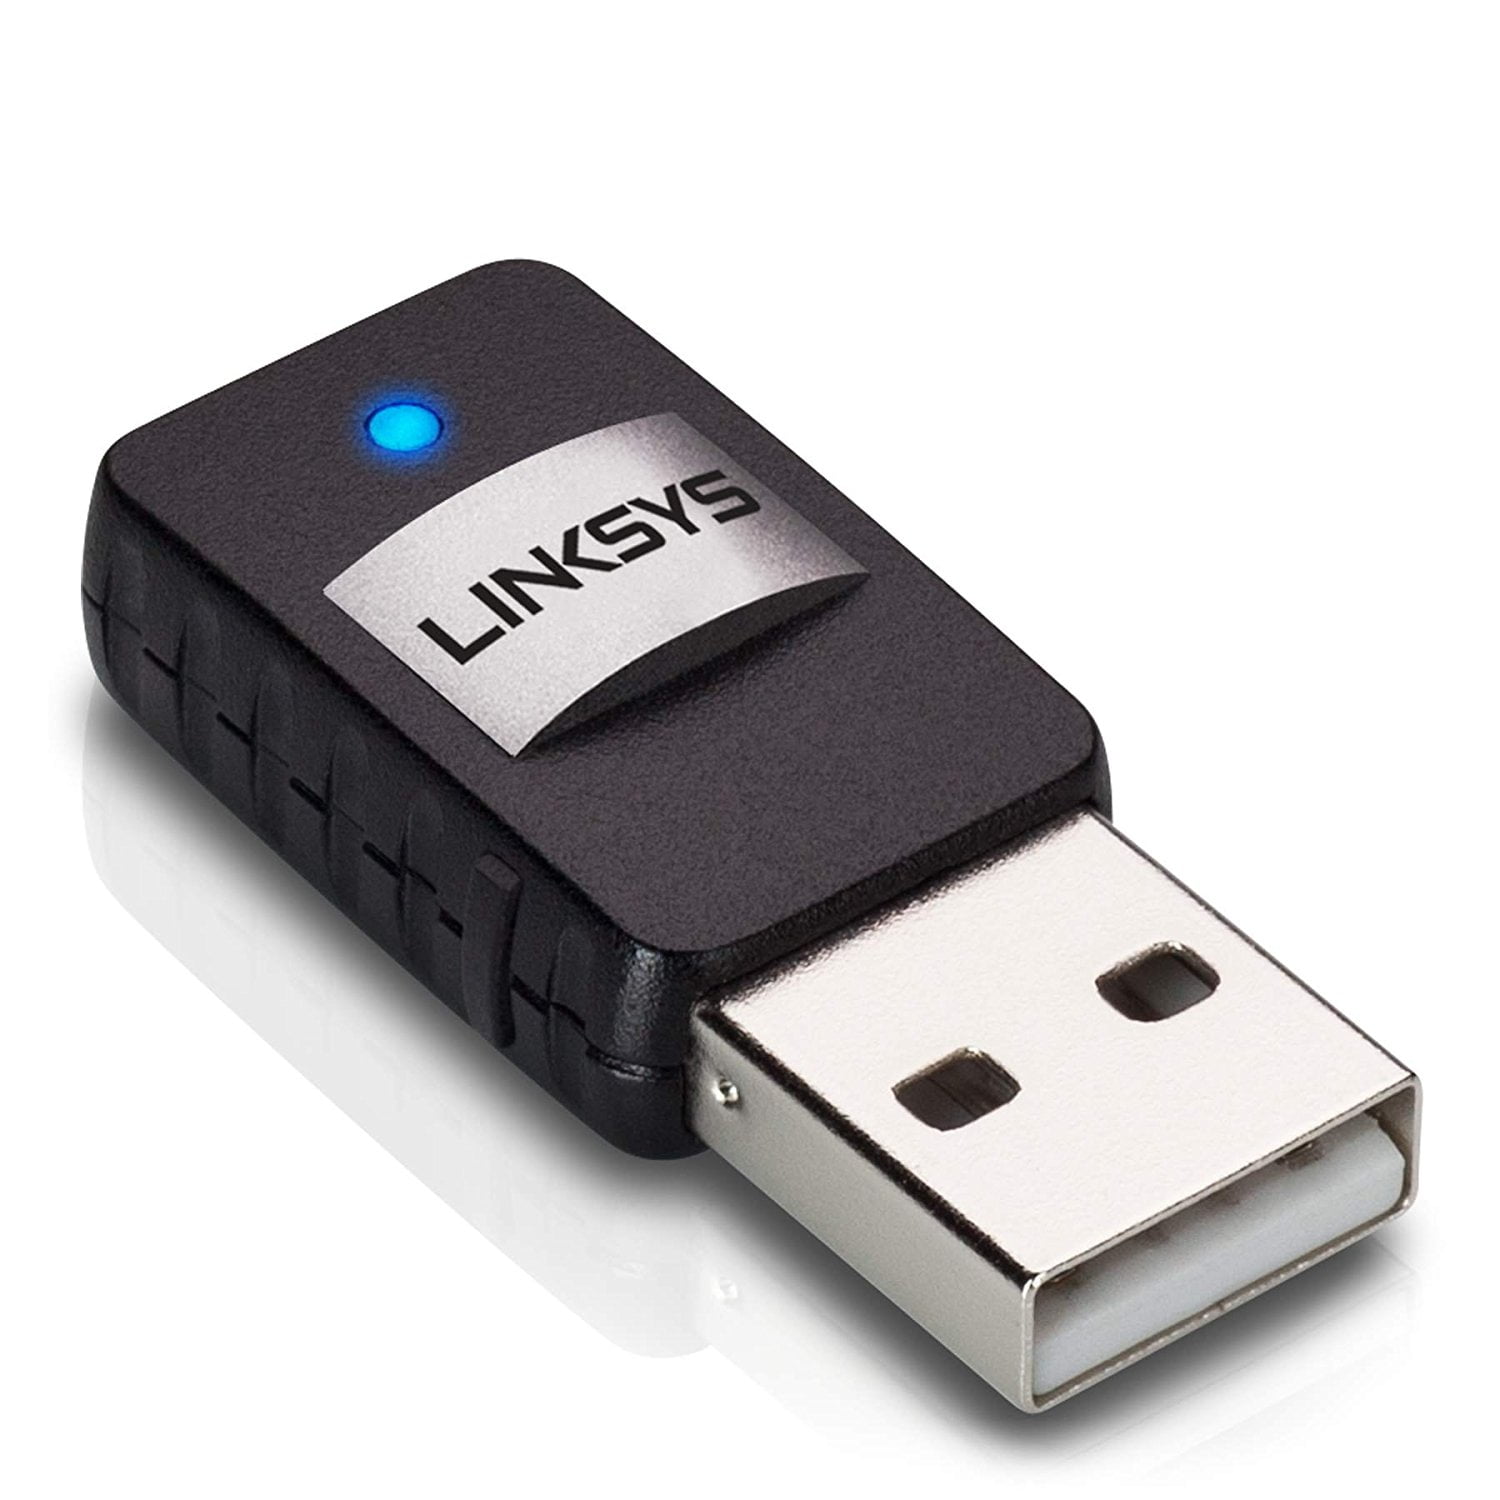 Linksys WUSB6300 AC1200 Wireless-AC USB Adapter Renewed